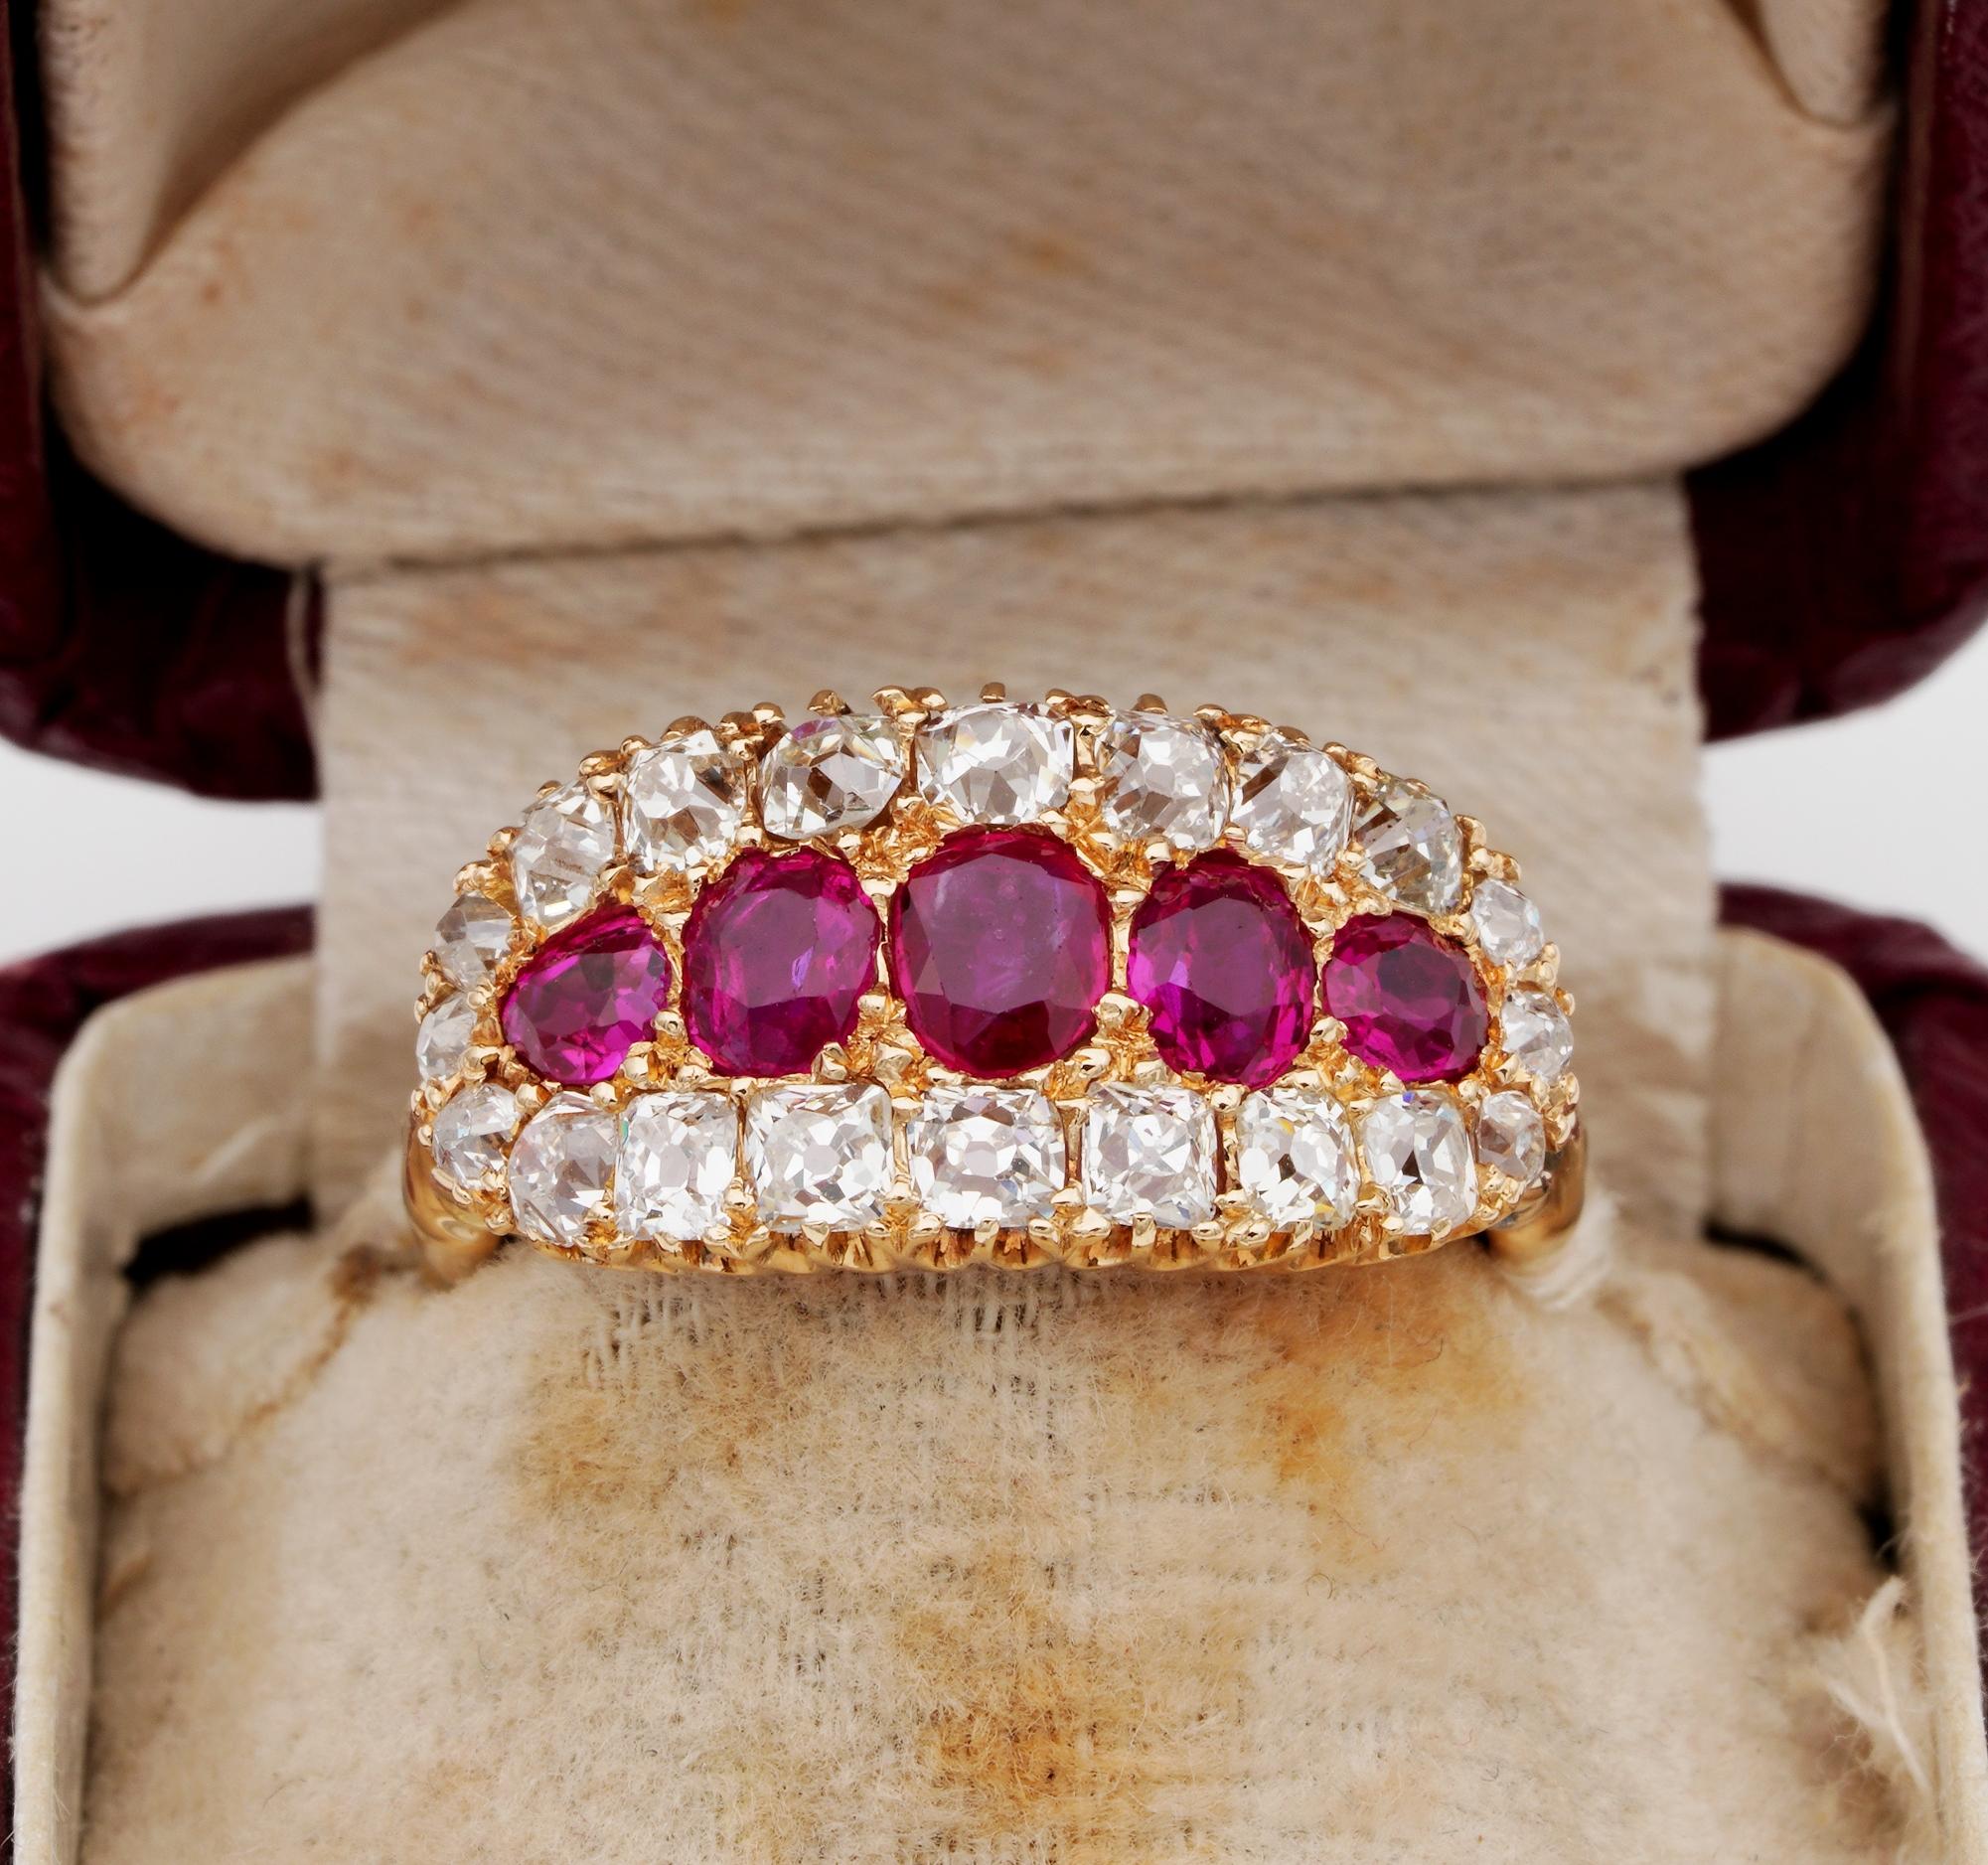 Außergewöhnlicher viktorianischer Ring von höchstem Standard, seltene natürliche burmesische Rubine und Diamanten mit fünf Steinen
Kann ein hervorragender Verlobungsring sein
Gefertigt aus massivem 18 KT Roségold - nicht markiert - um